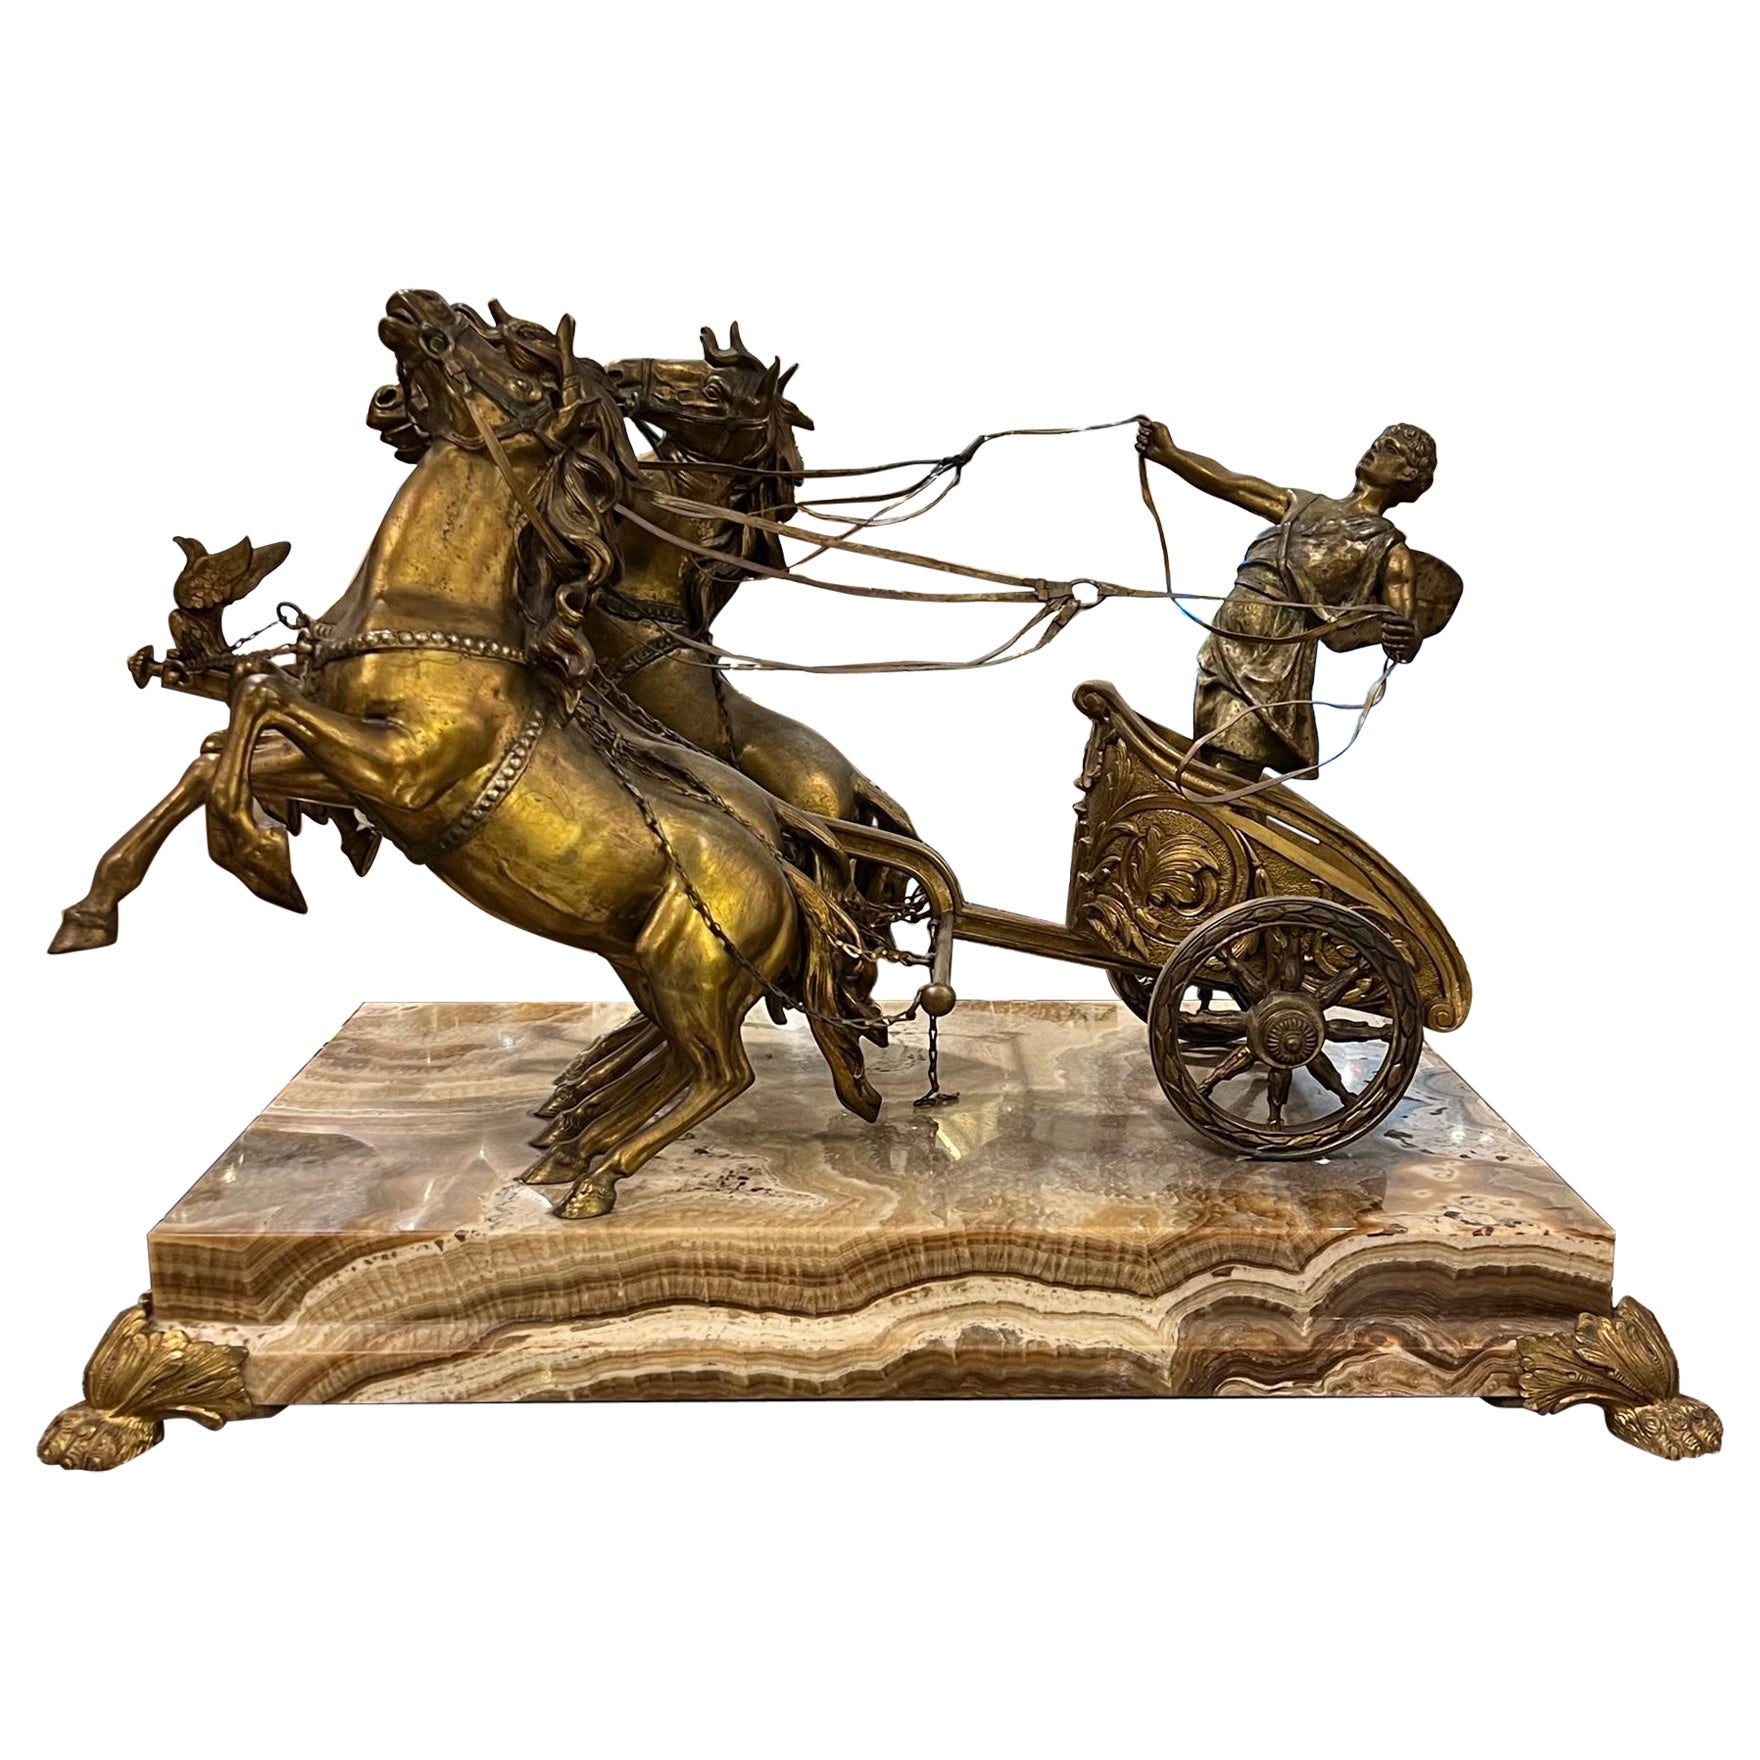 Sculpture de chariot romain en bronze sur socle en onyx